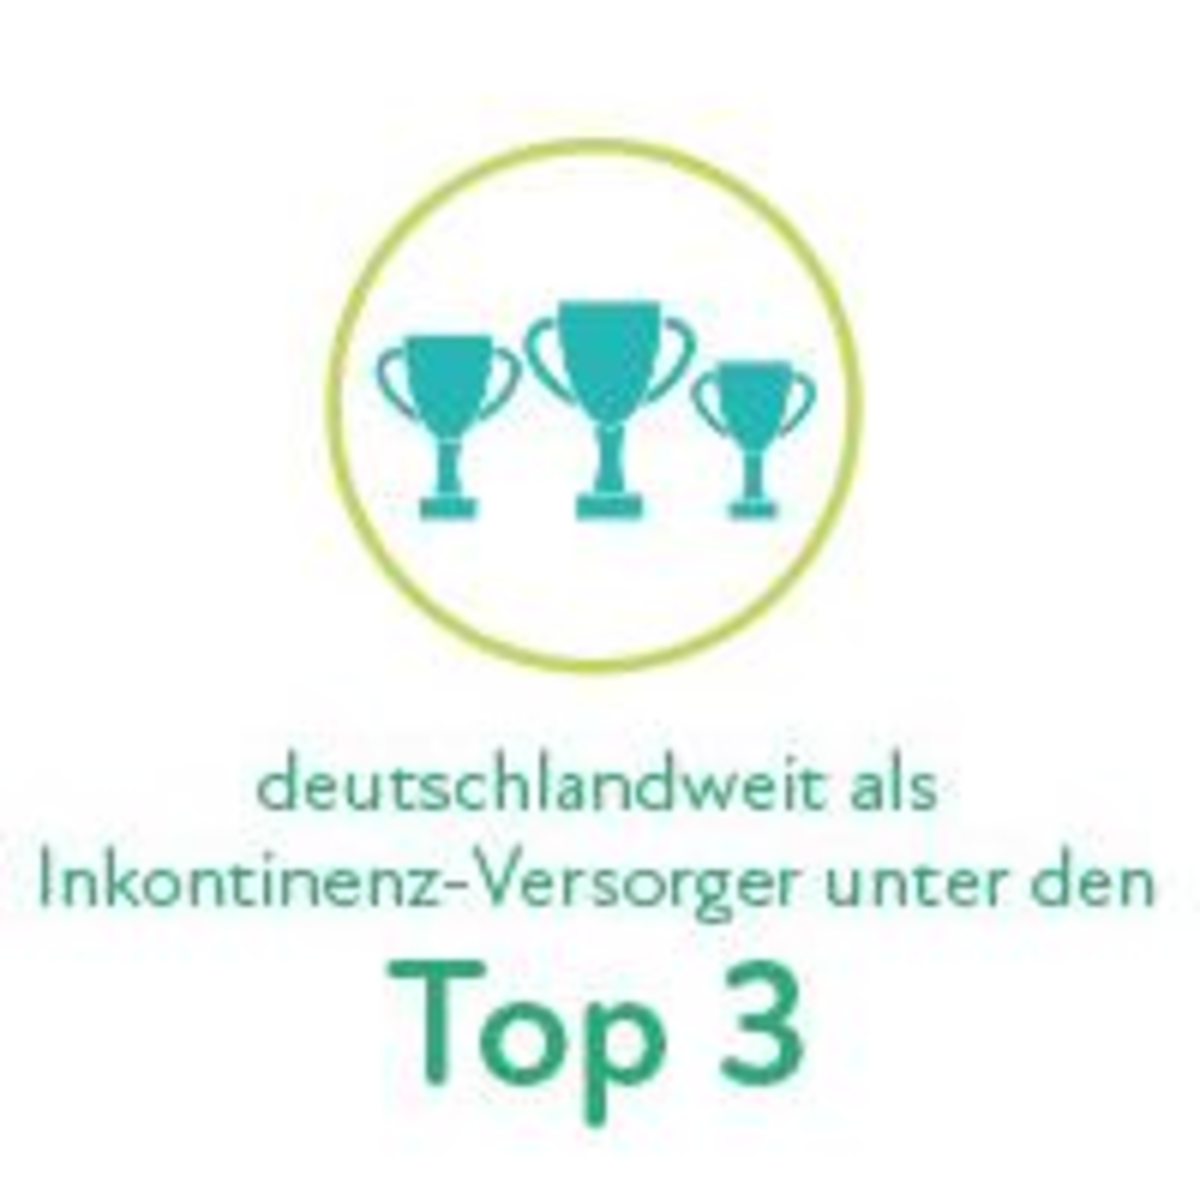 Oben: drei kleine Pokale. Darunter der Text: „Deutschlandweit als Inkontinenz-Versorger unter den TOP 3“.